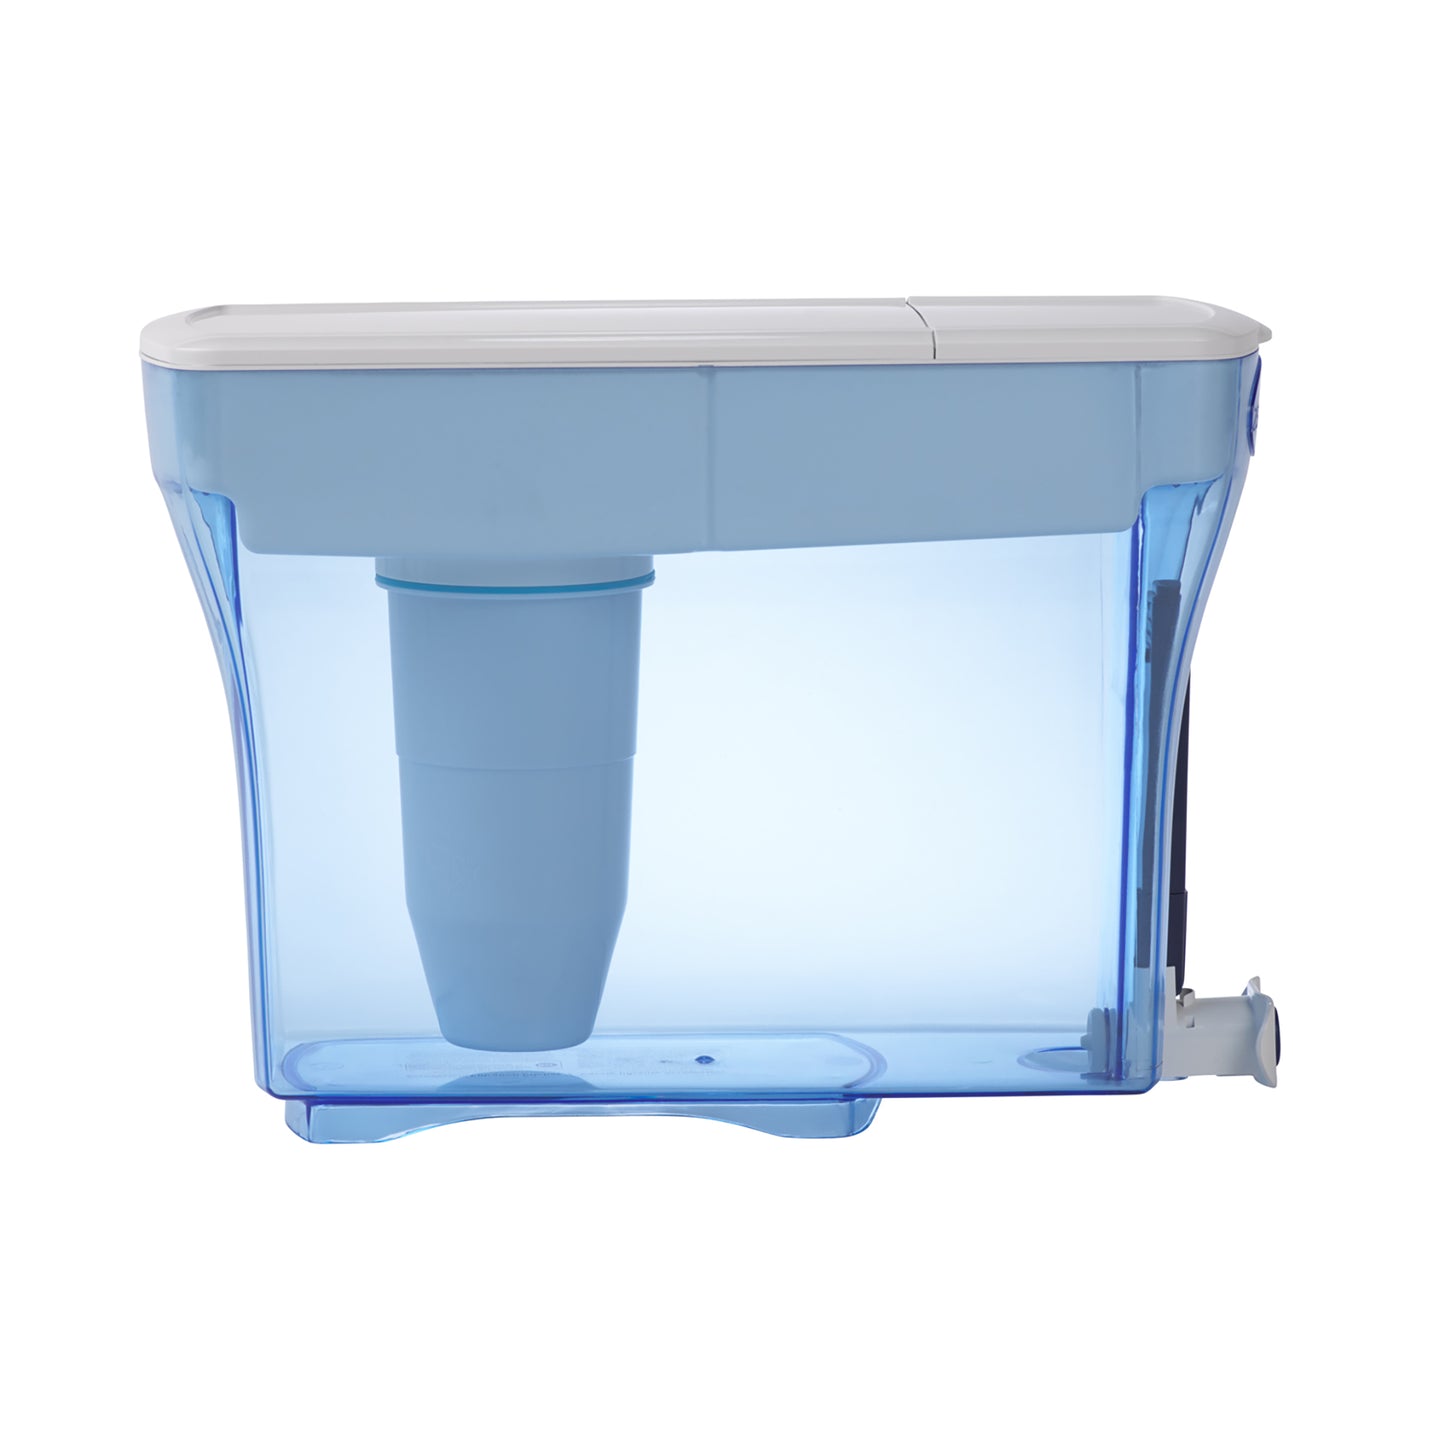 Sistema di filtraggio da 5,4 litri | Sistema di filtraggio da 23 tazze (5,4 litri)